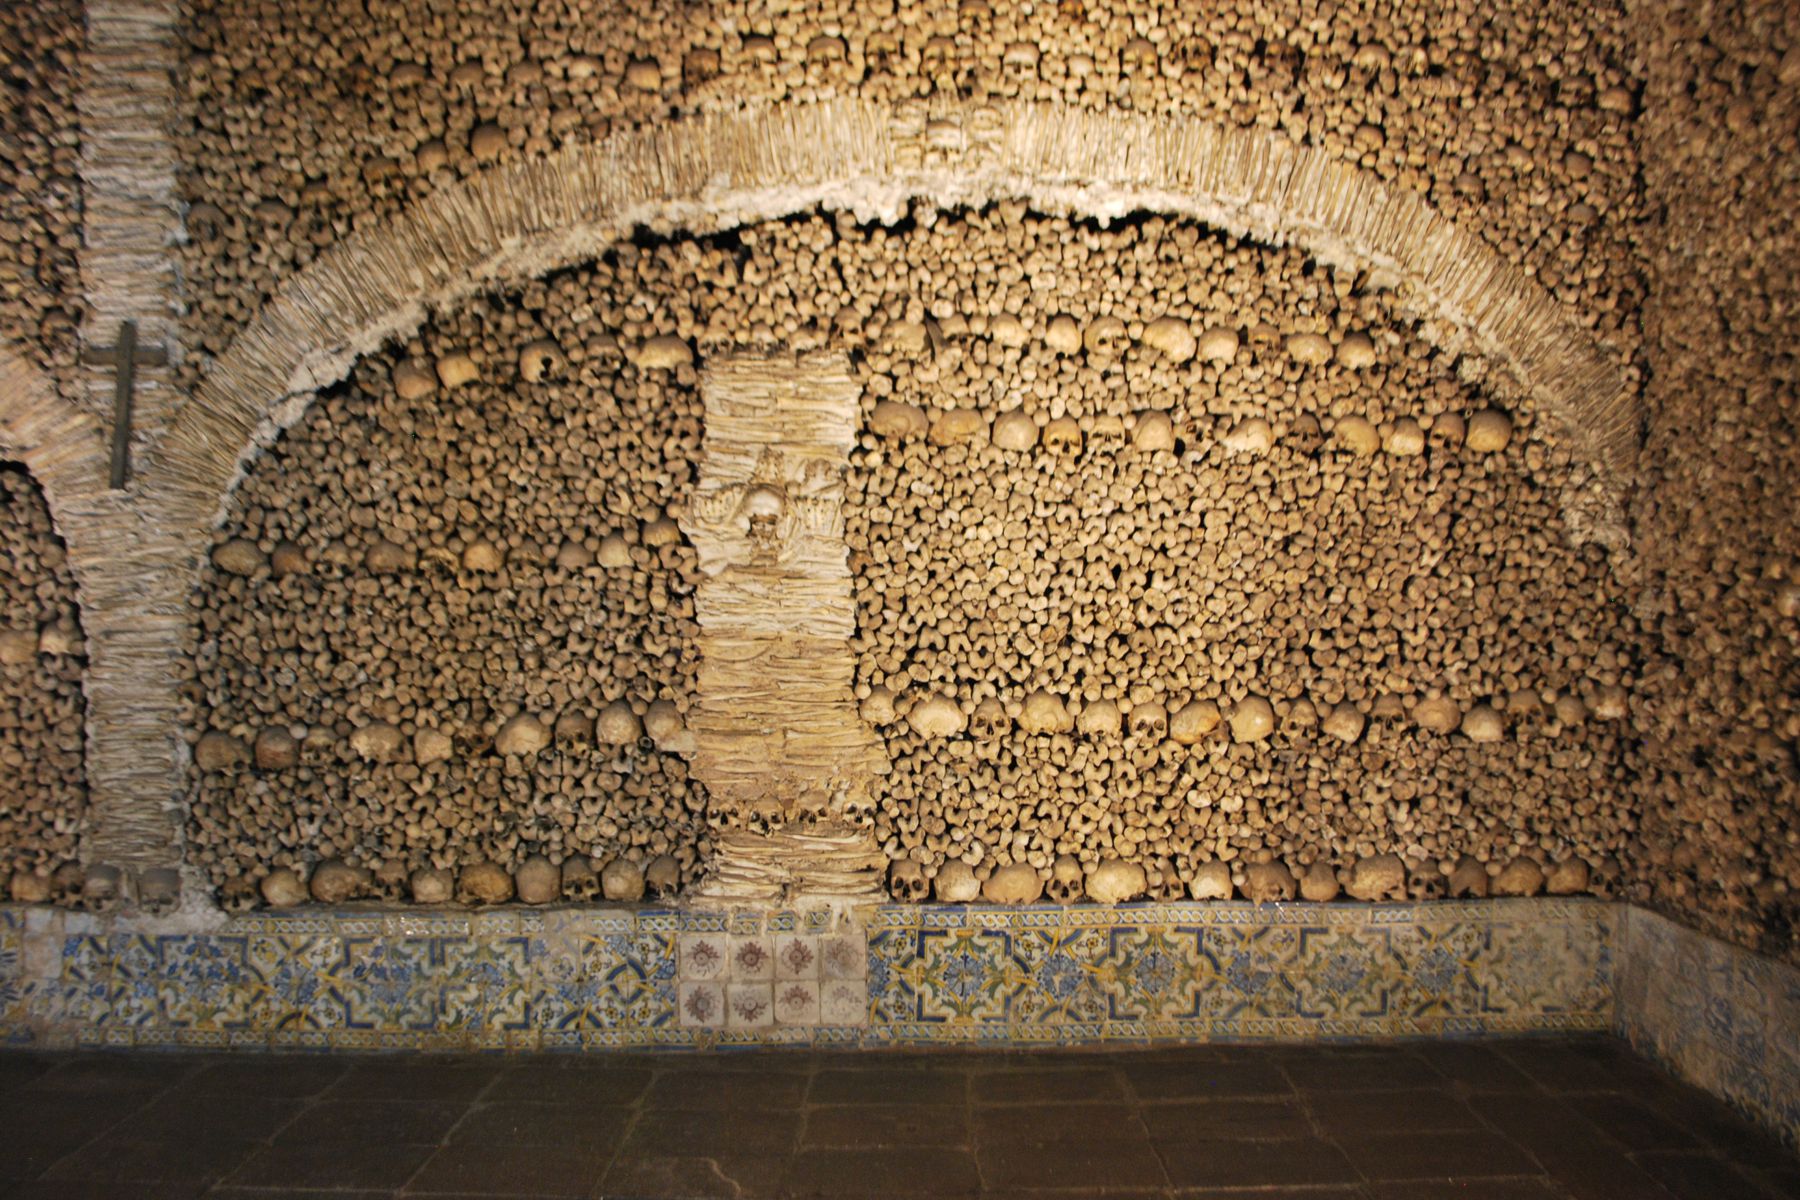 Wall of bones in Chapel of bones, Evora (2010)